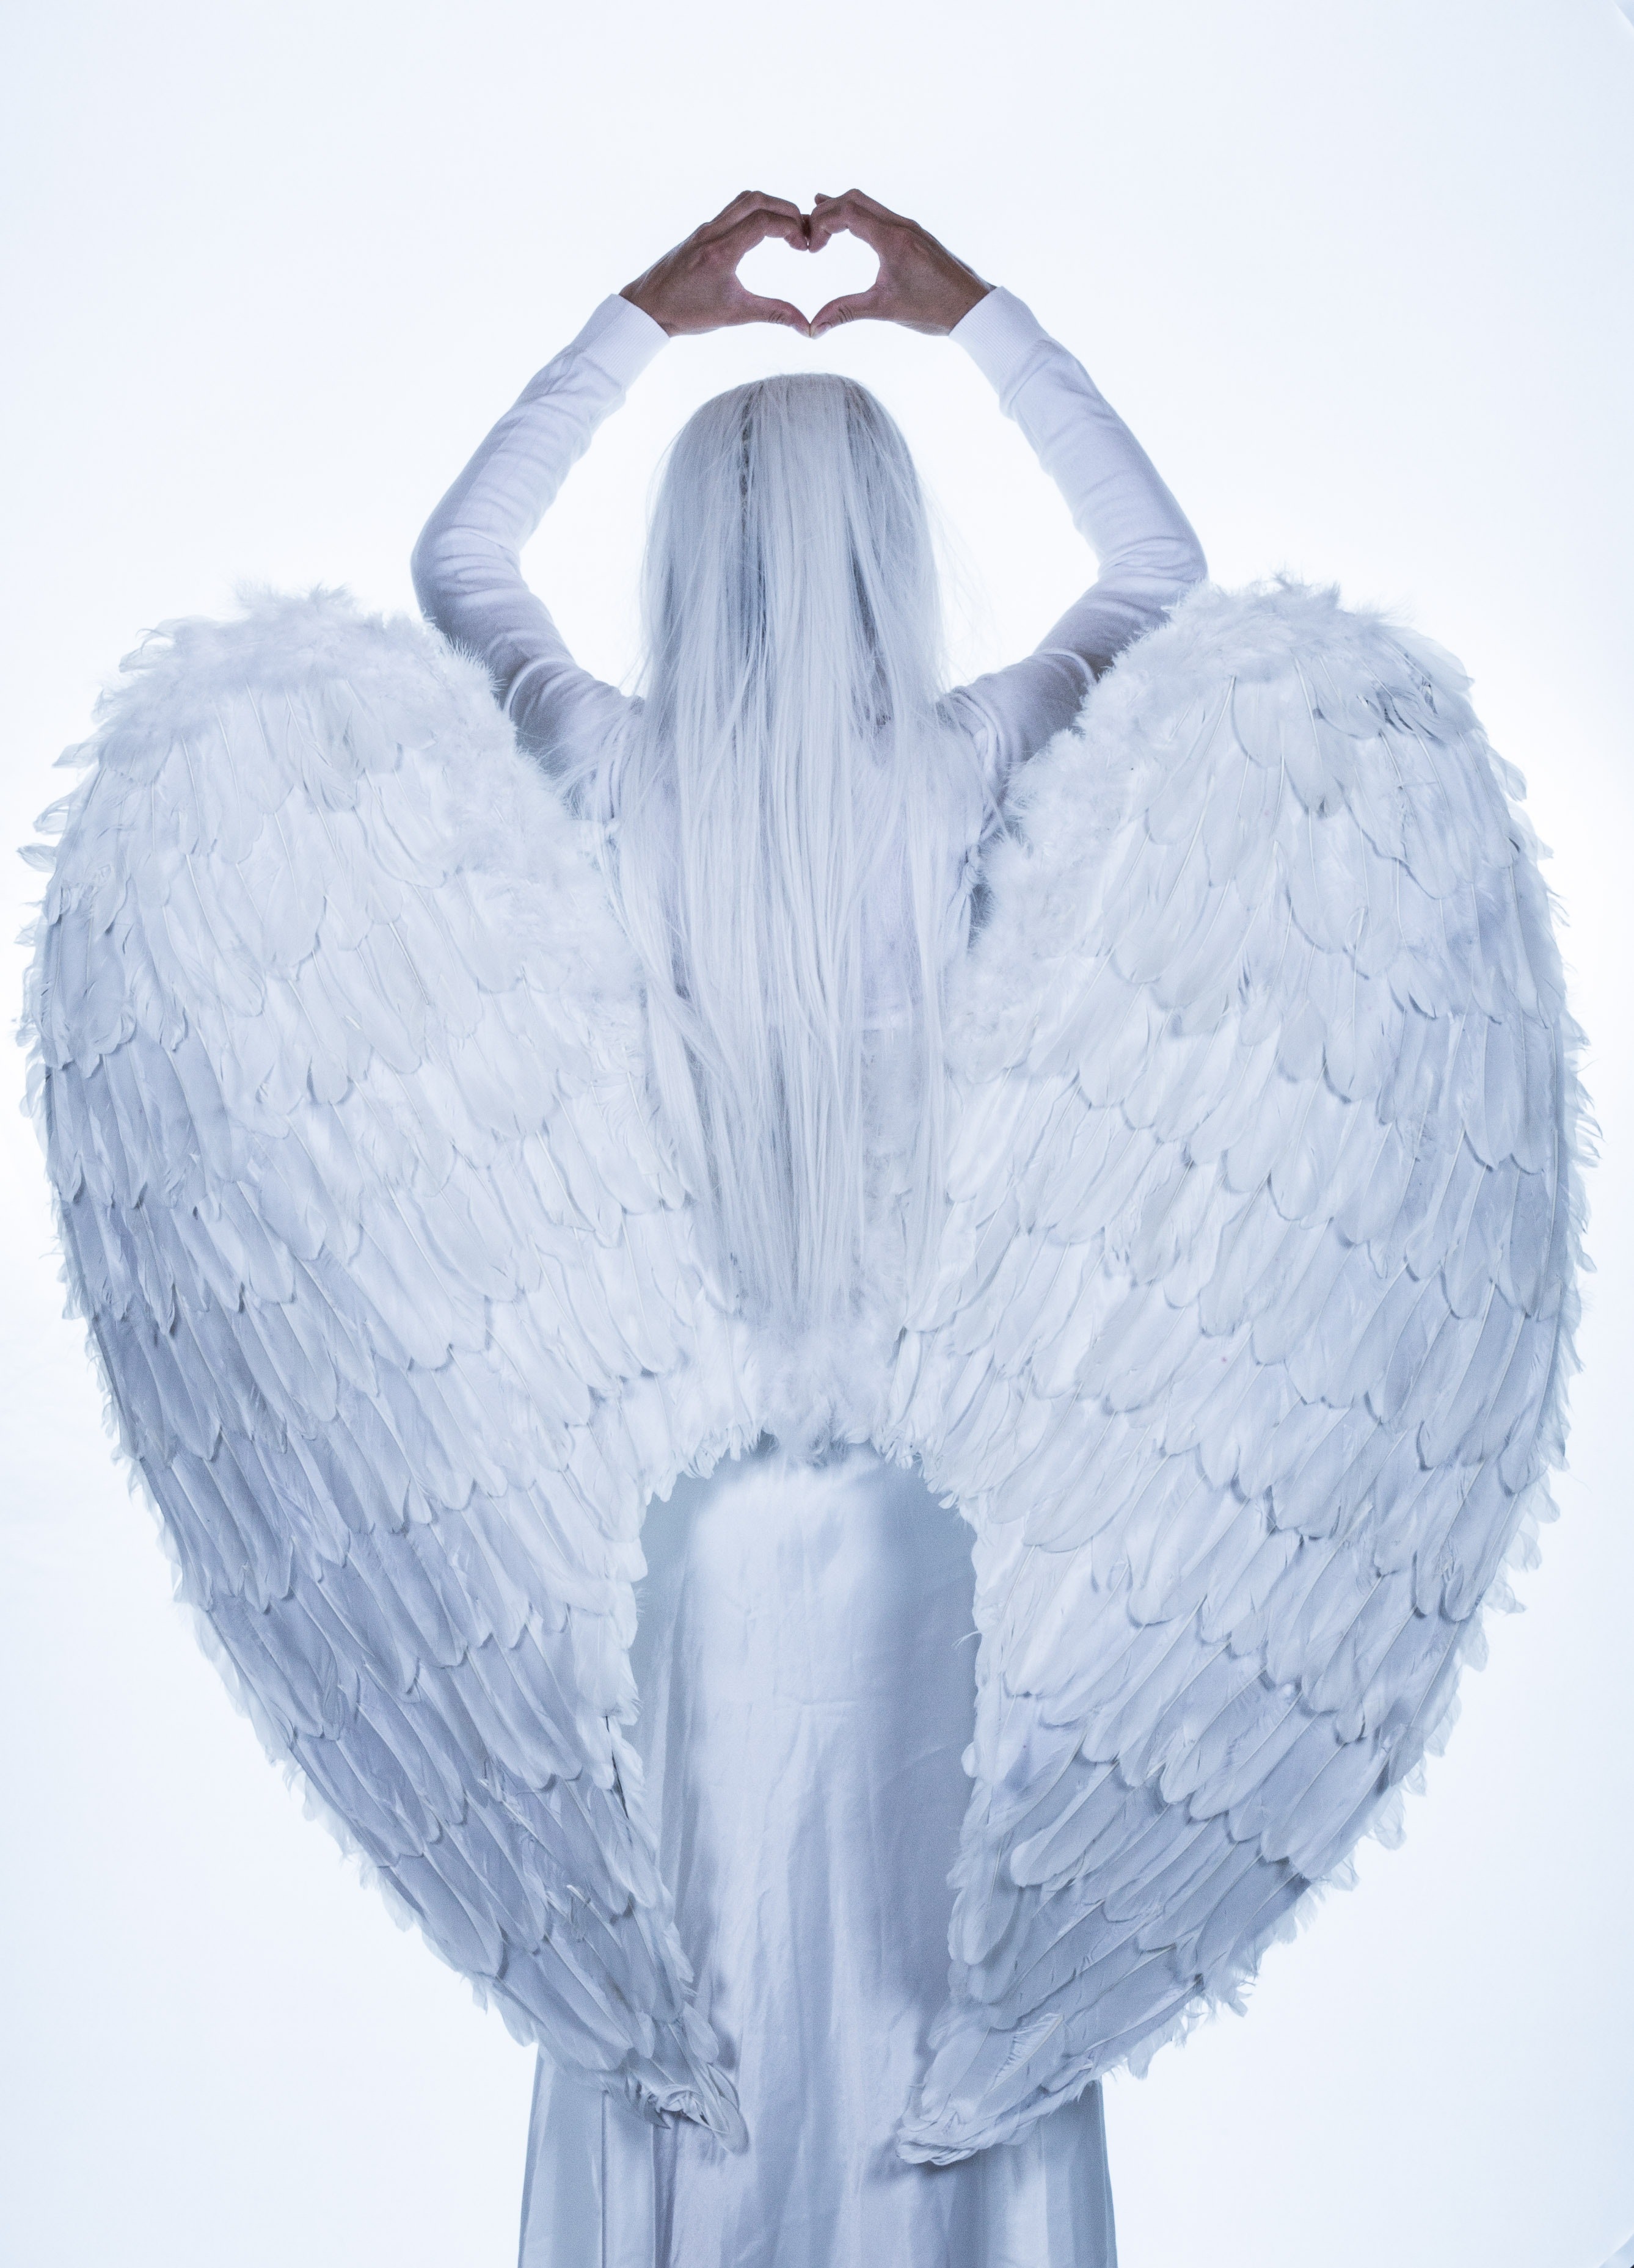 White angel illustration photo